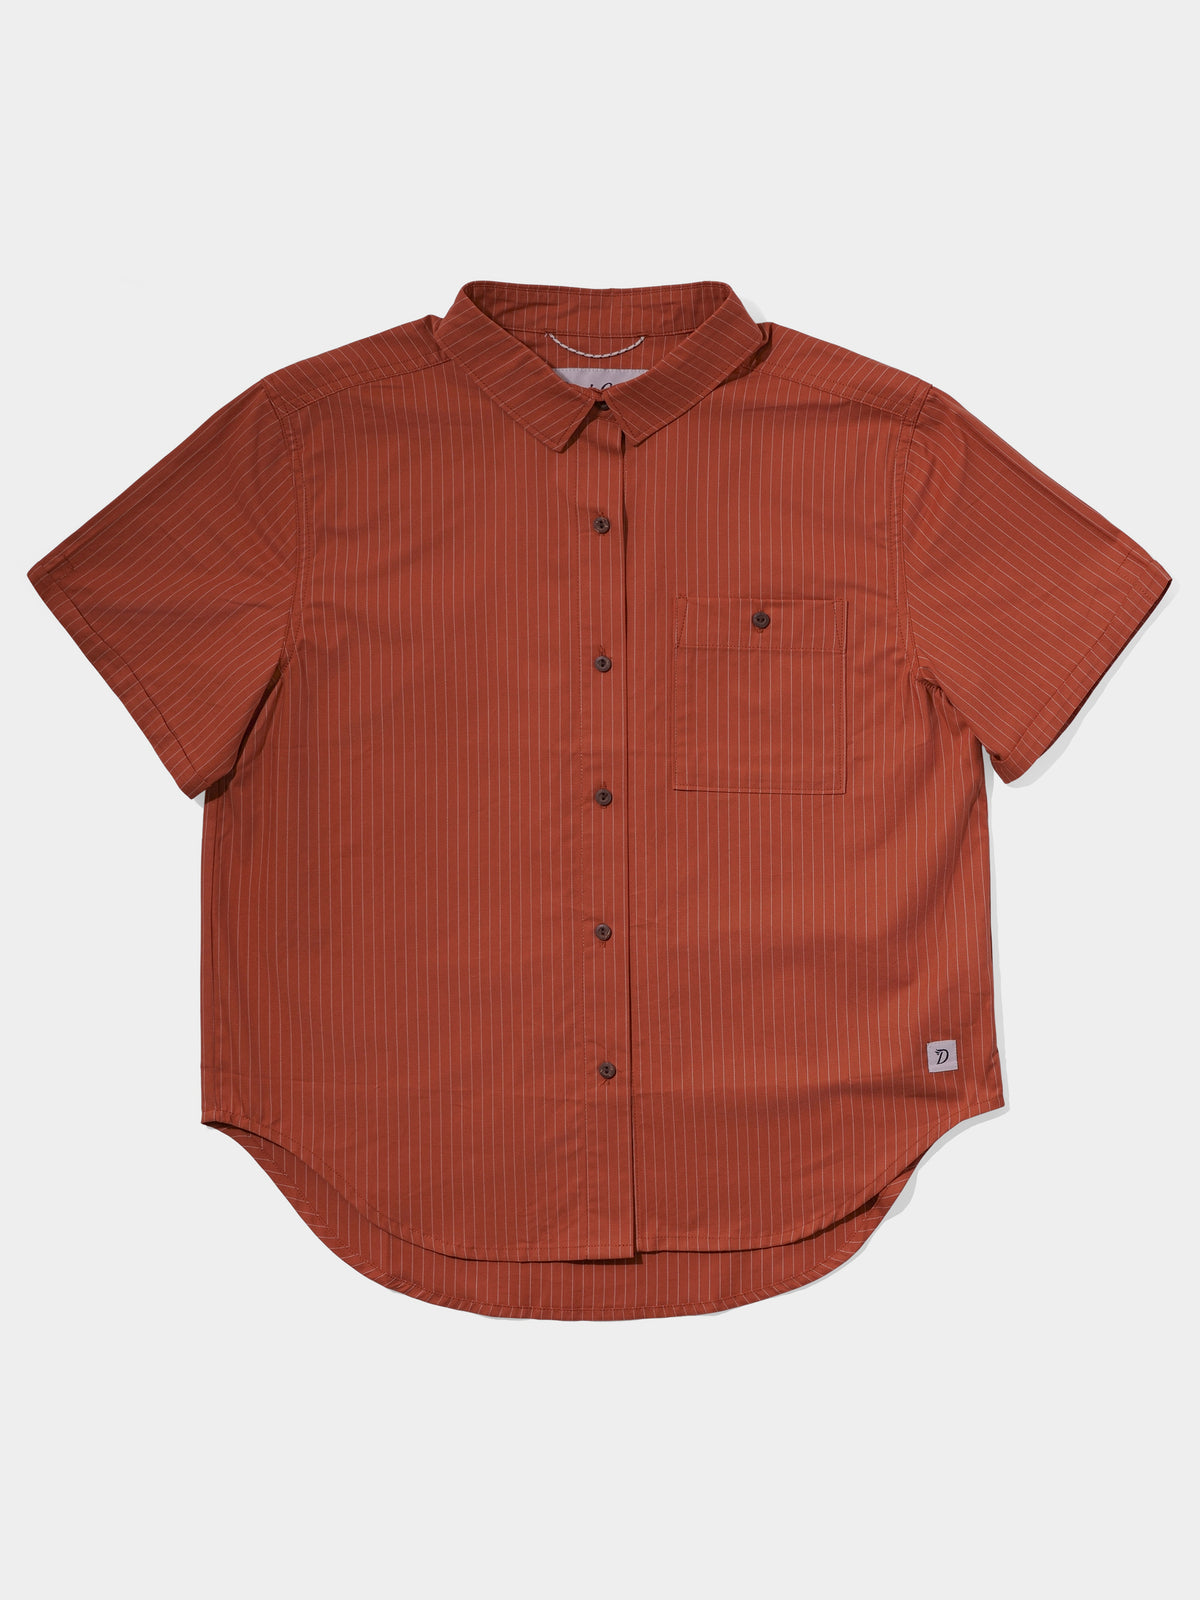 Women's Creekside Shirt - Clay Pinstripe